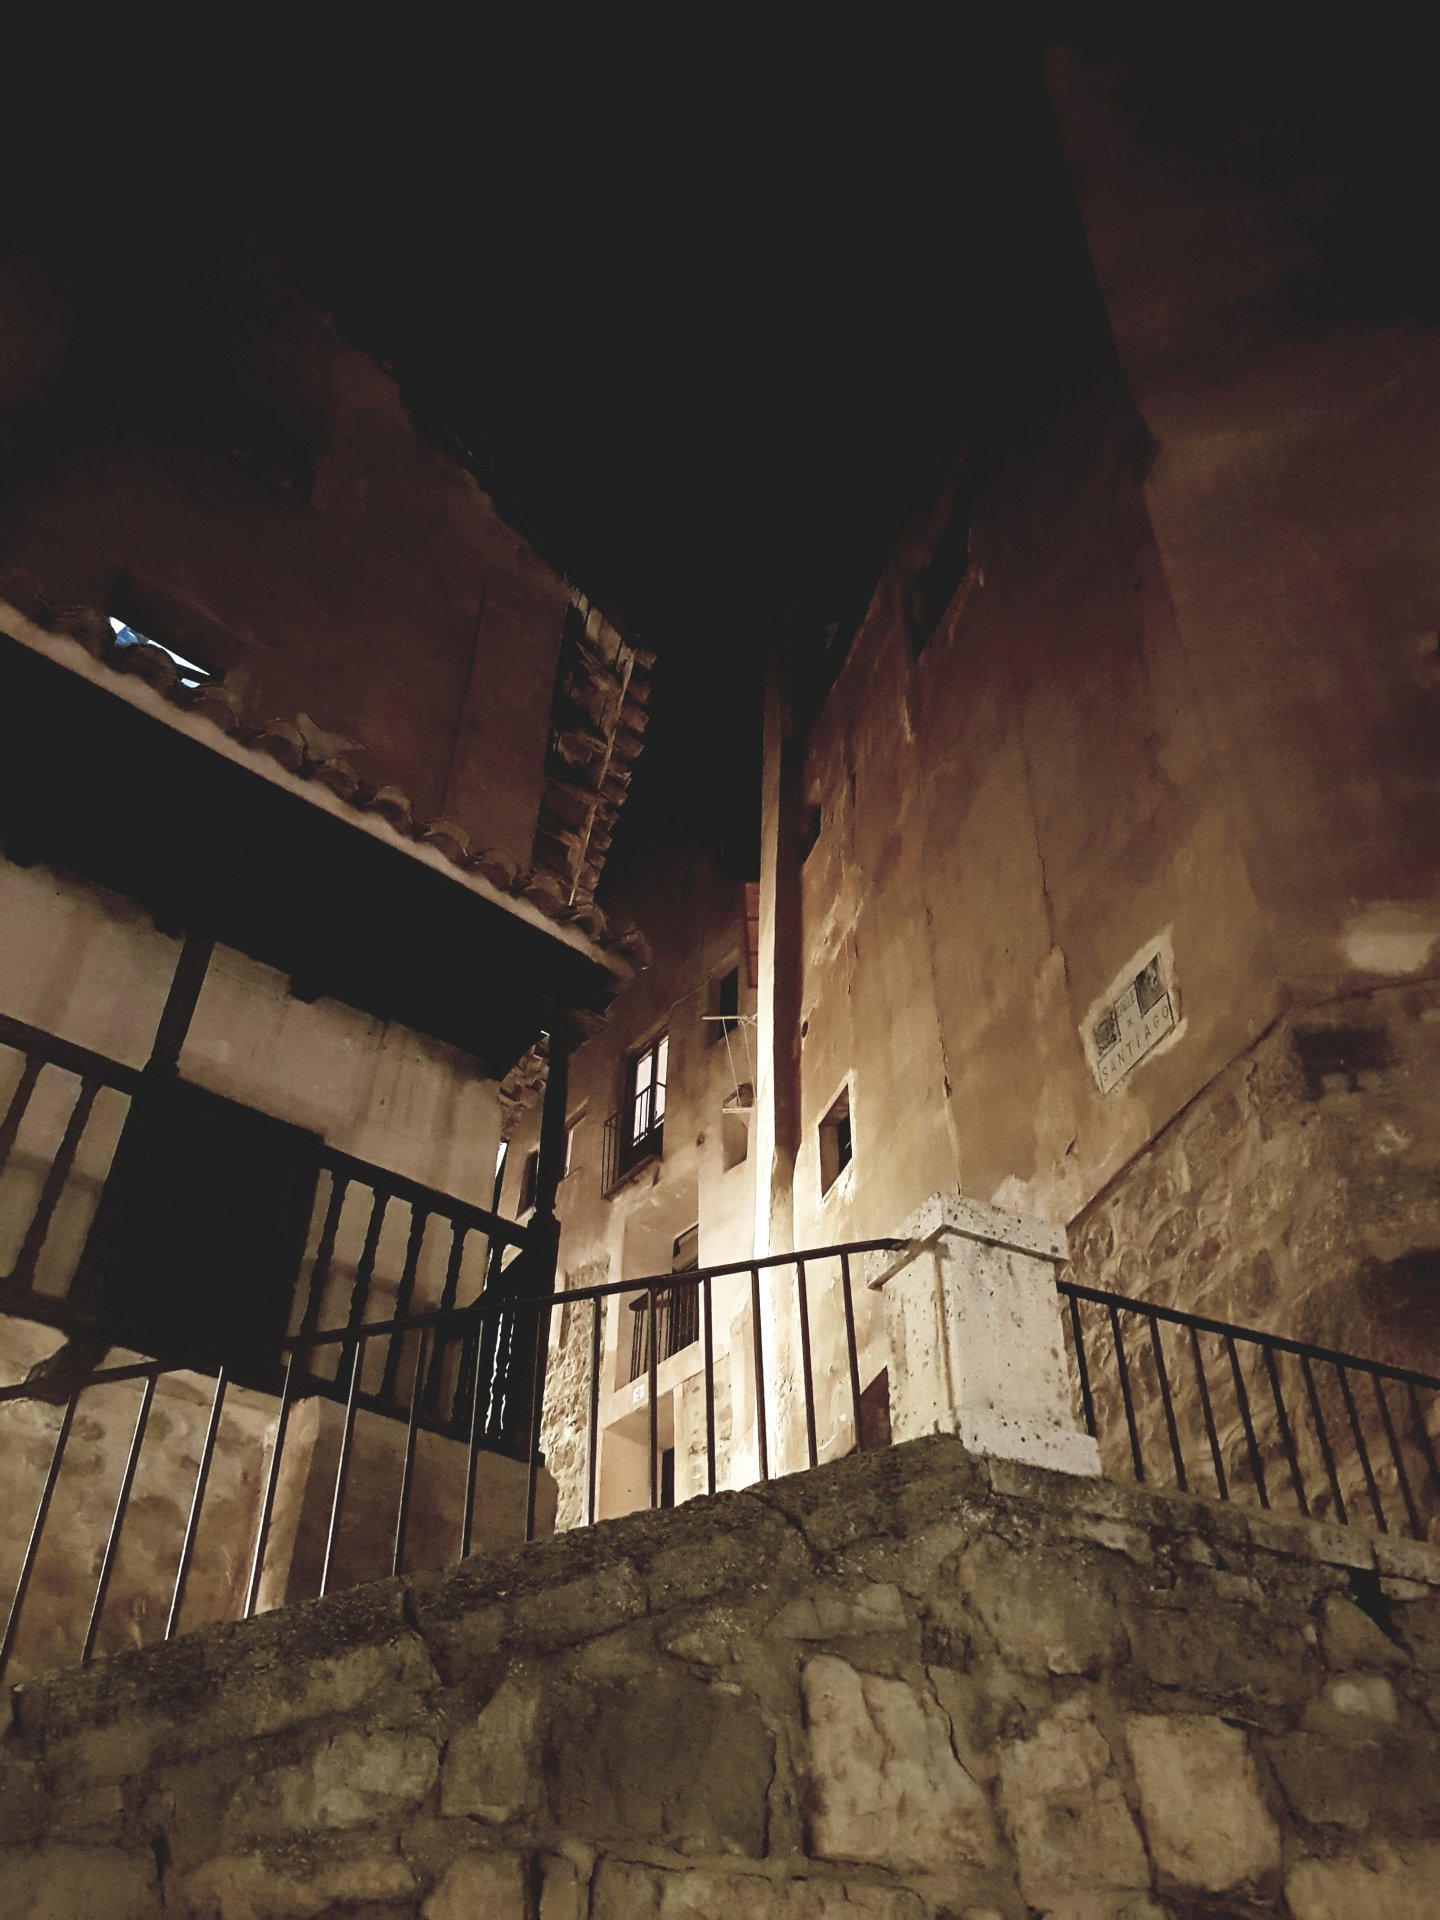 #NochesDeAgosto en #Albarracín…bien merecen #VisitaGuiada…